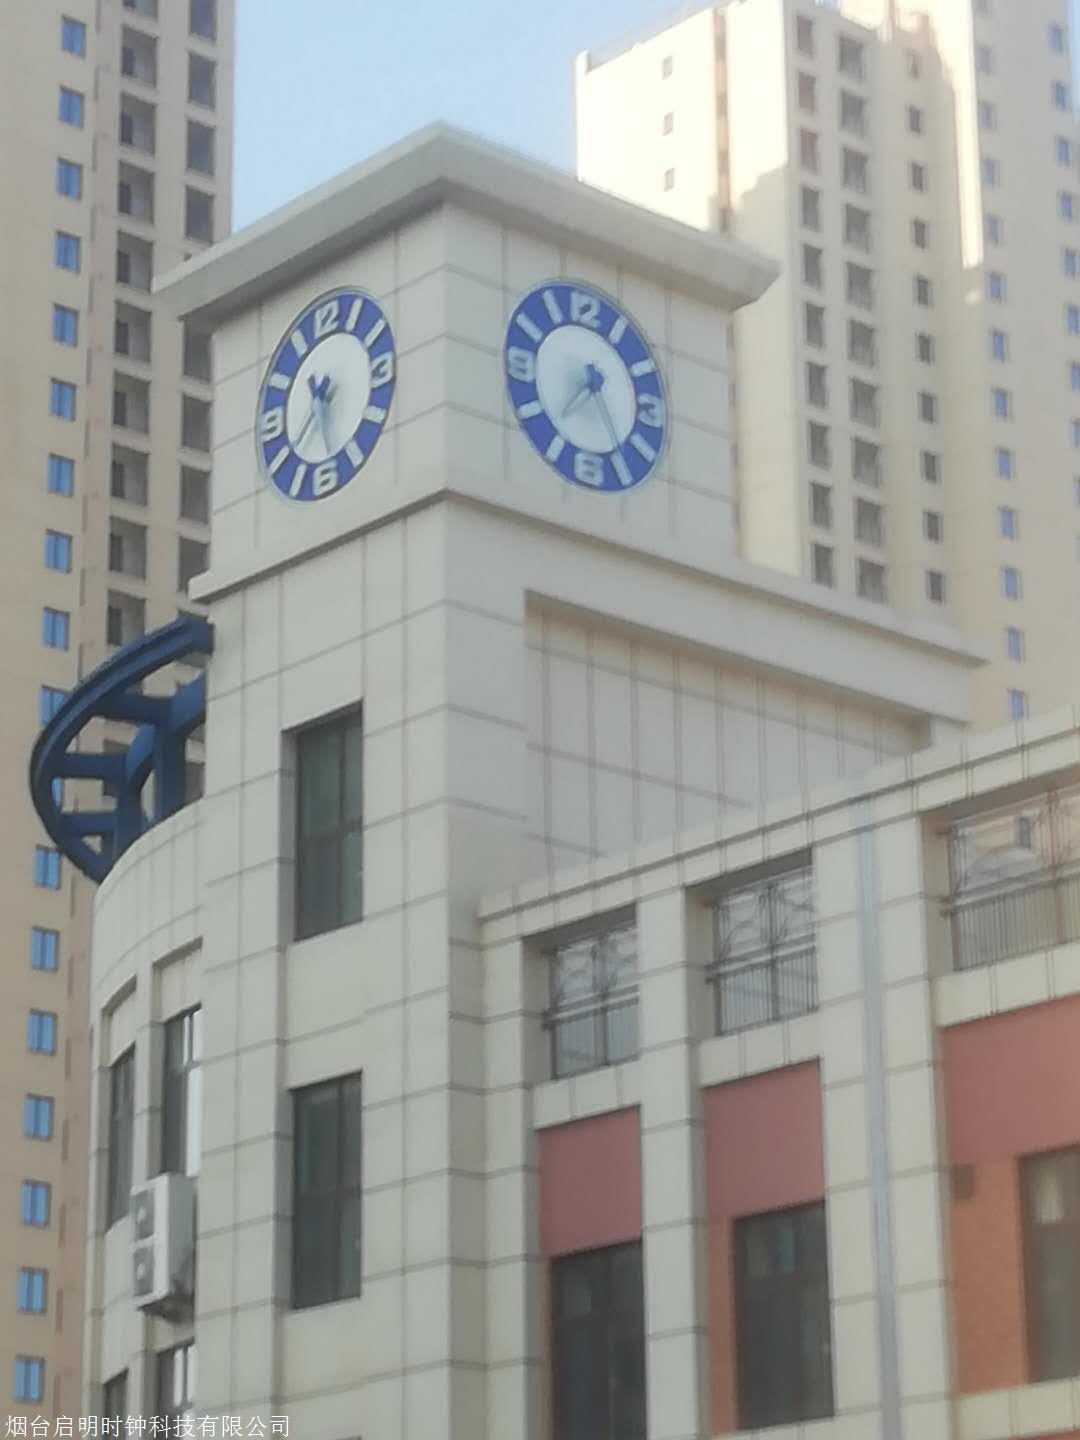 厂家建筑塔钟 重庆塔钟 优选启明时钟 塔楼大钟 QM-3 塔钟维修2